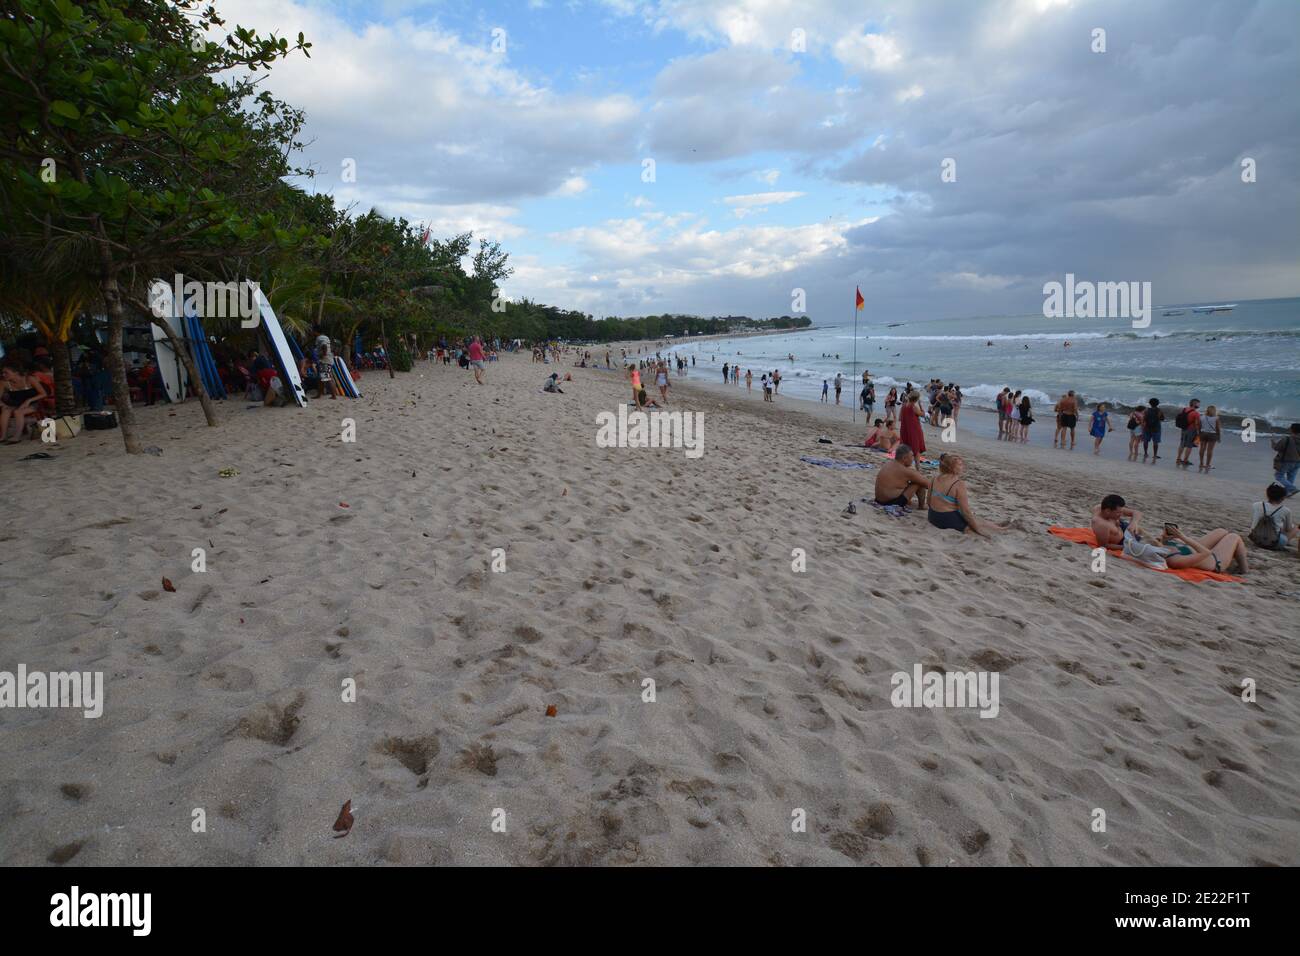 Bali, Indonesien - 12. Januar 2021: Einheimische und Touristen versammeln sich am Strand von Kuta zum Spaß, genießen Surfen und fotografieren die balinesische Kultur Stockfoto